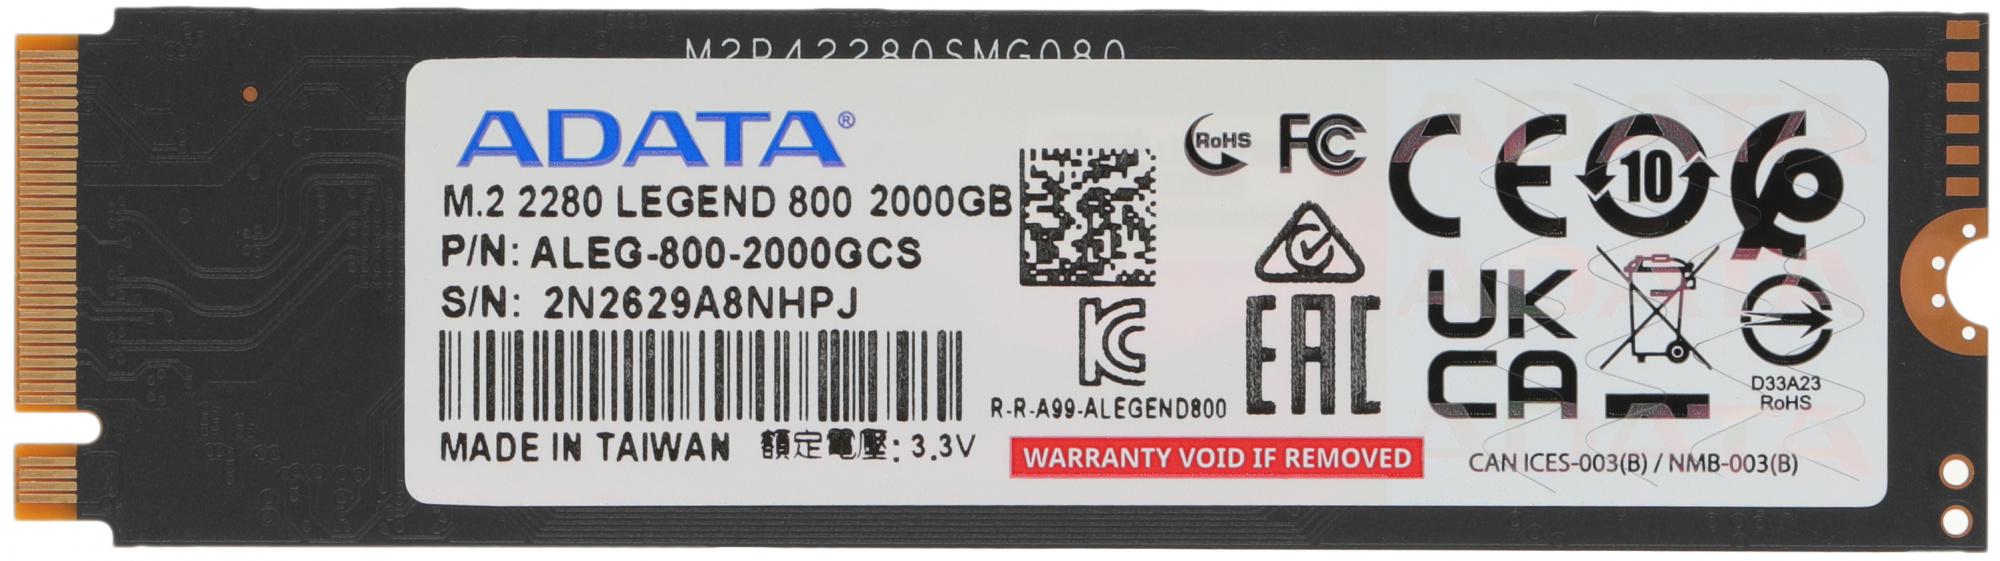 SSD  A-Data Legend 800 ALEG-800-2000GCS 2, M.2 2280, PCIe 4.0 x4,  NVMe,  M.2